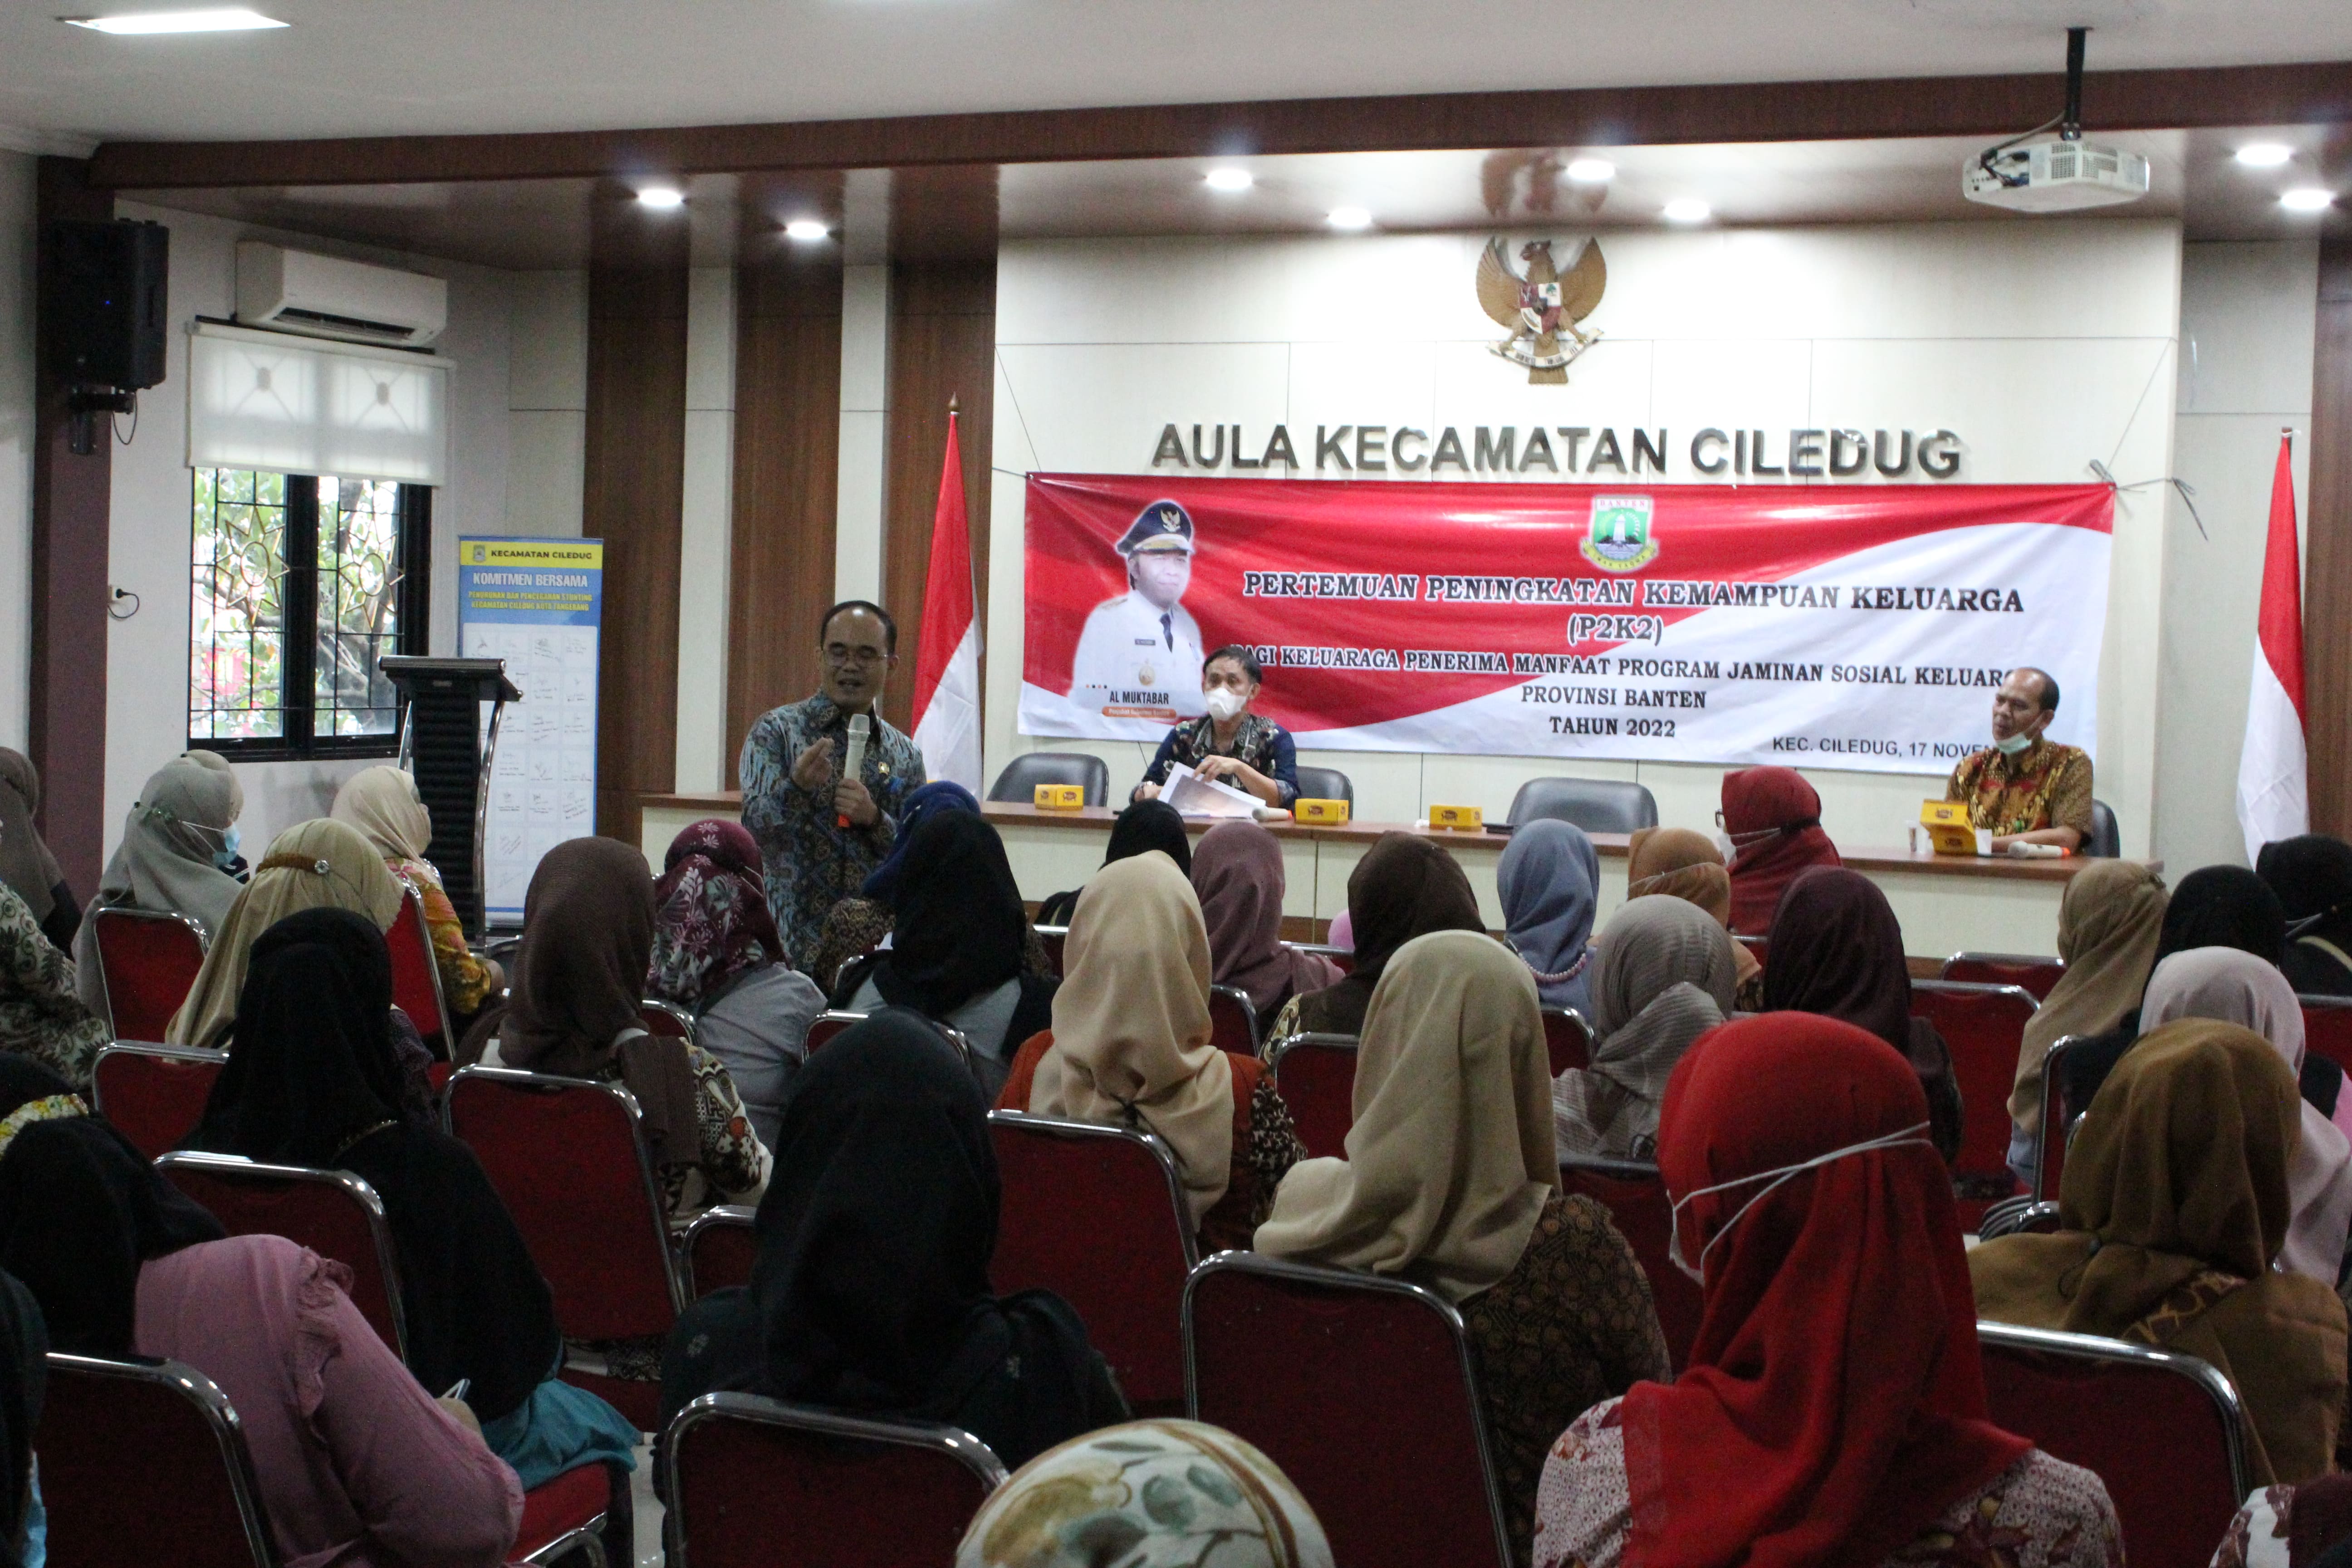 Sosialisasi Kegiatan Pertemuan Peningkatan Kemampuan Keluarga (P2K2) Bagi Keluarga Penerima Manfaat Program Jaminan Sosial Provinsi Banten